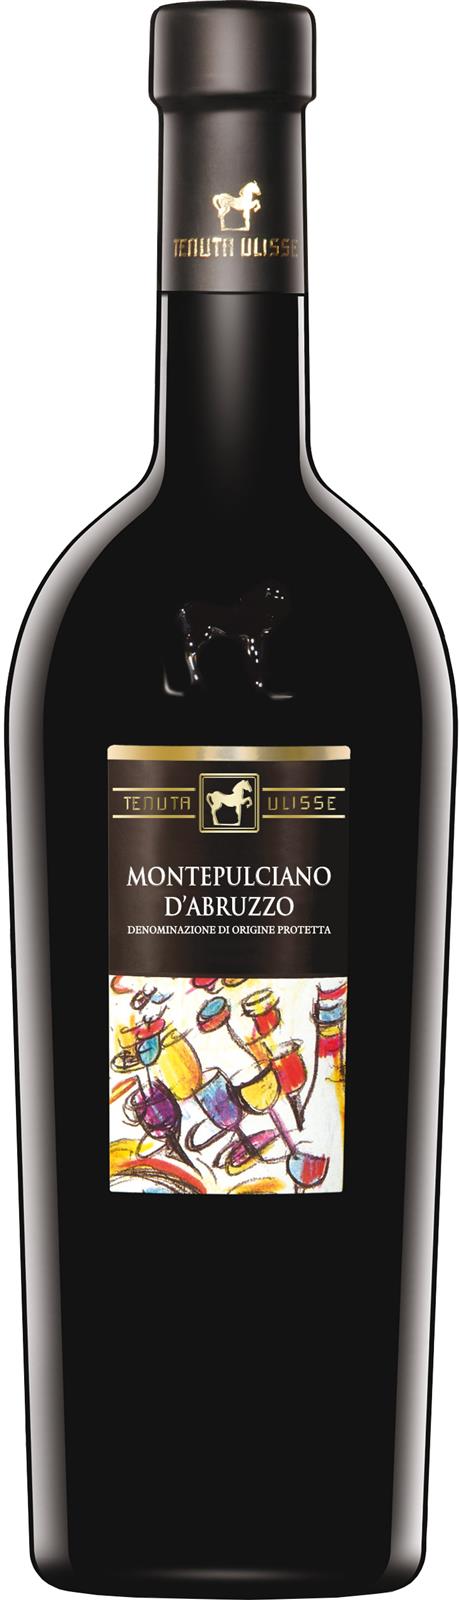 Unico Tenuta Ulisse Montepulciano D'Abruzzo 2017 (Italy)